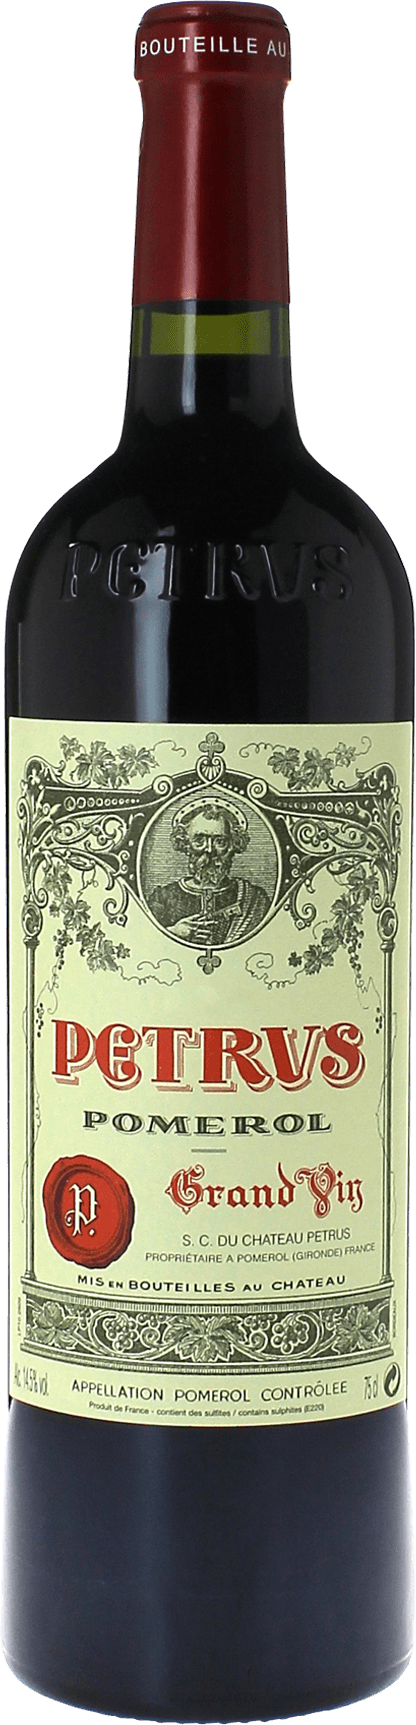 Petrus 2002  Pomerol, Bordeaux rouge